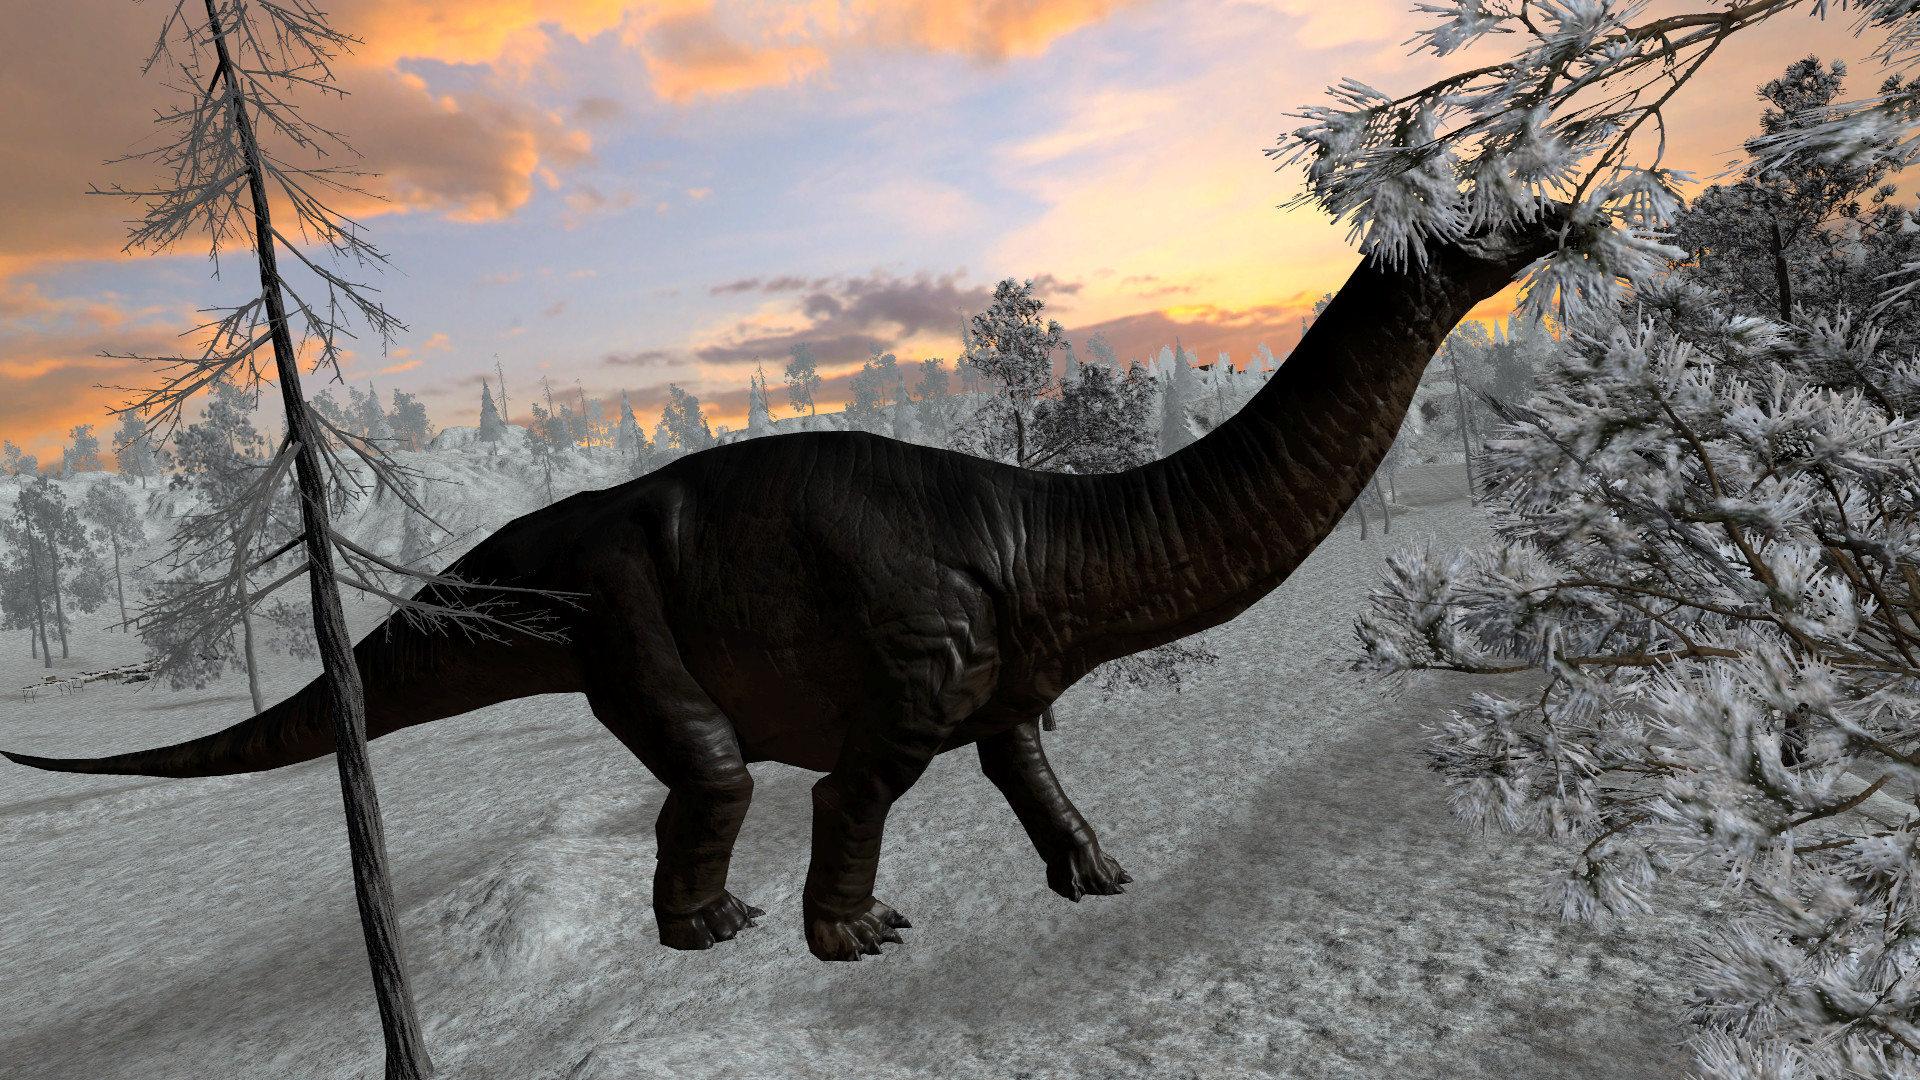 [$ 0.32] Dinosaur Hunt - Brontosaurus Expansion Pack DLC Steam CD Key